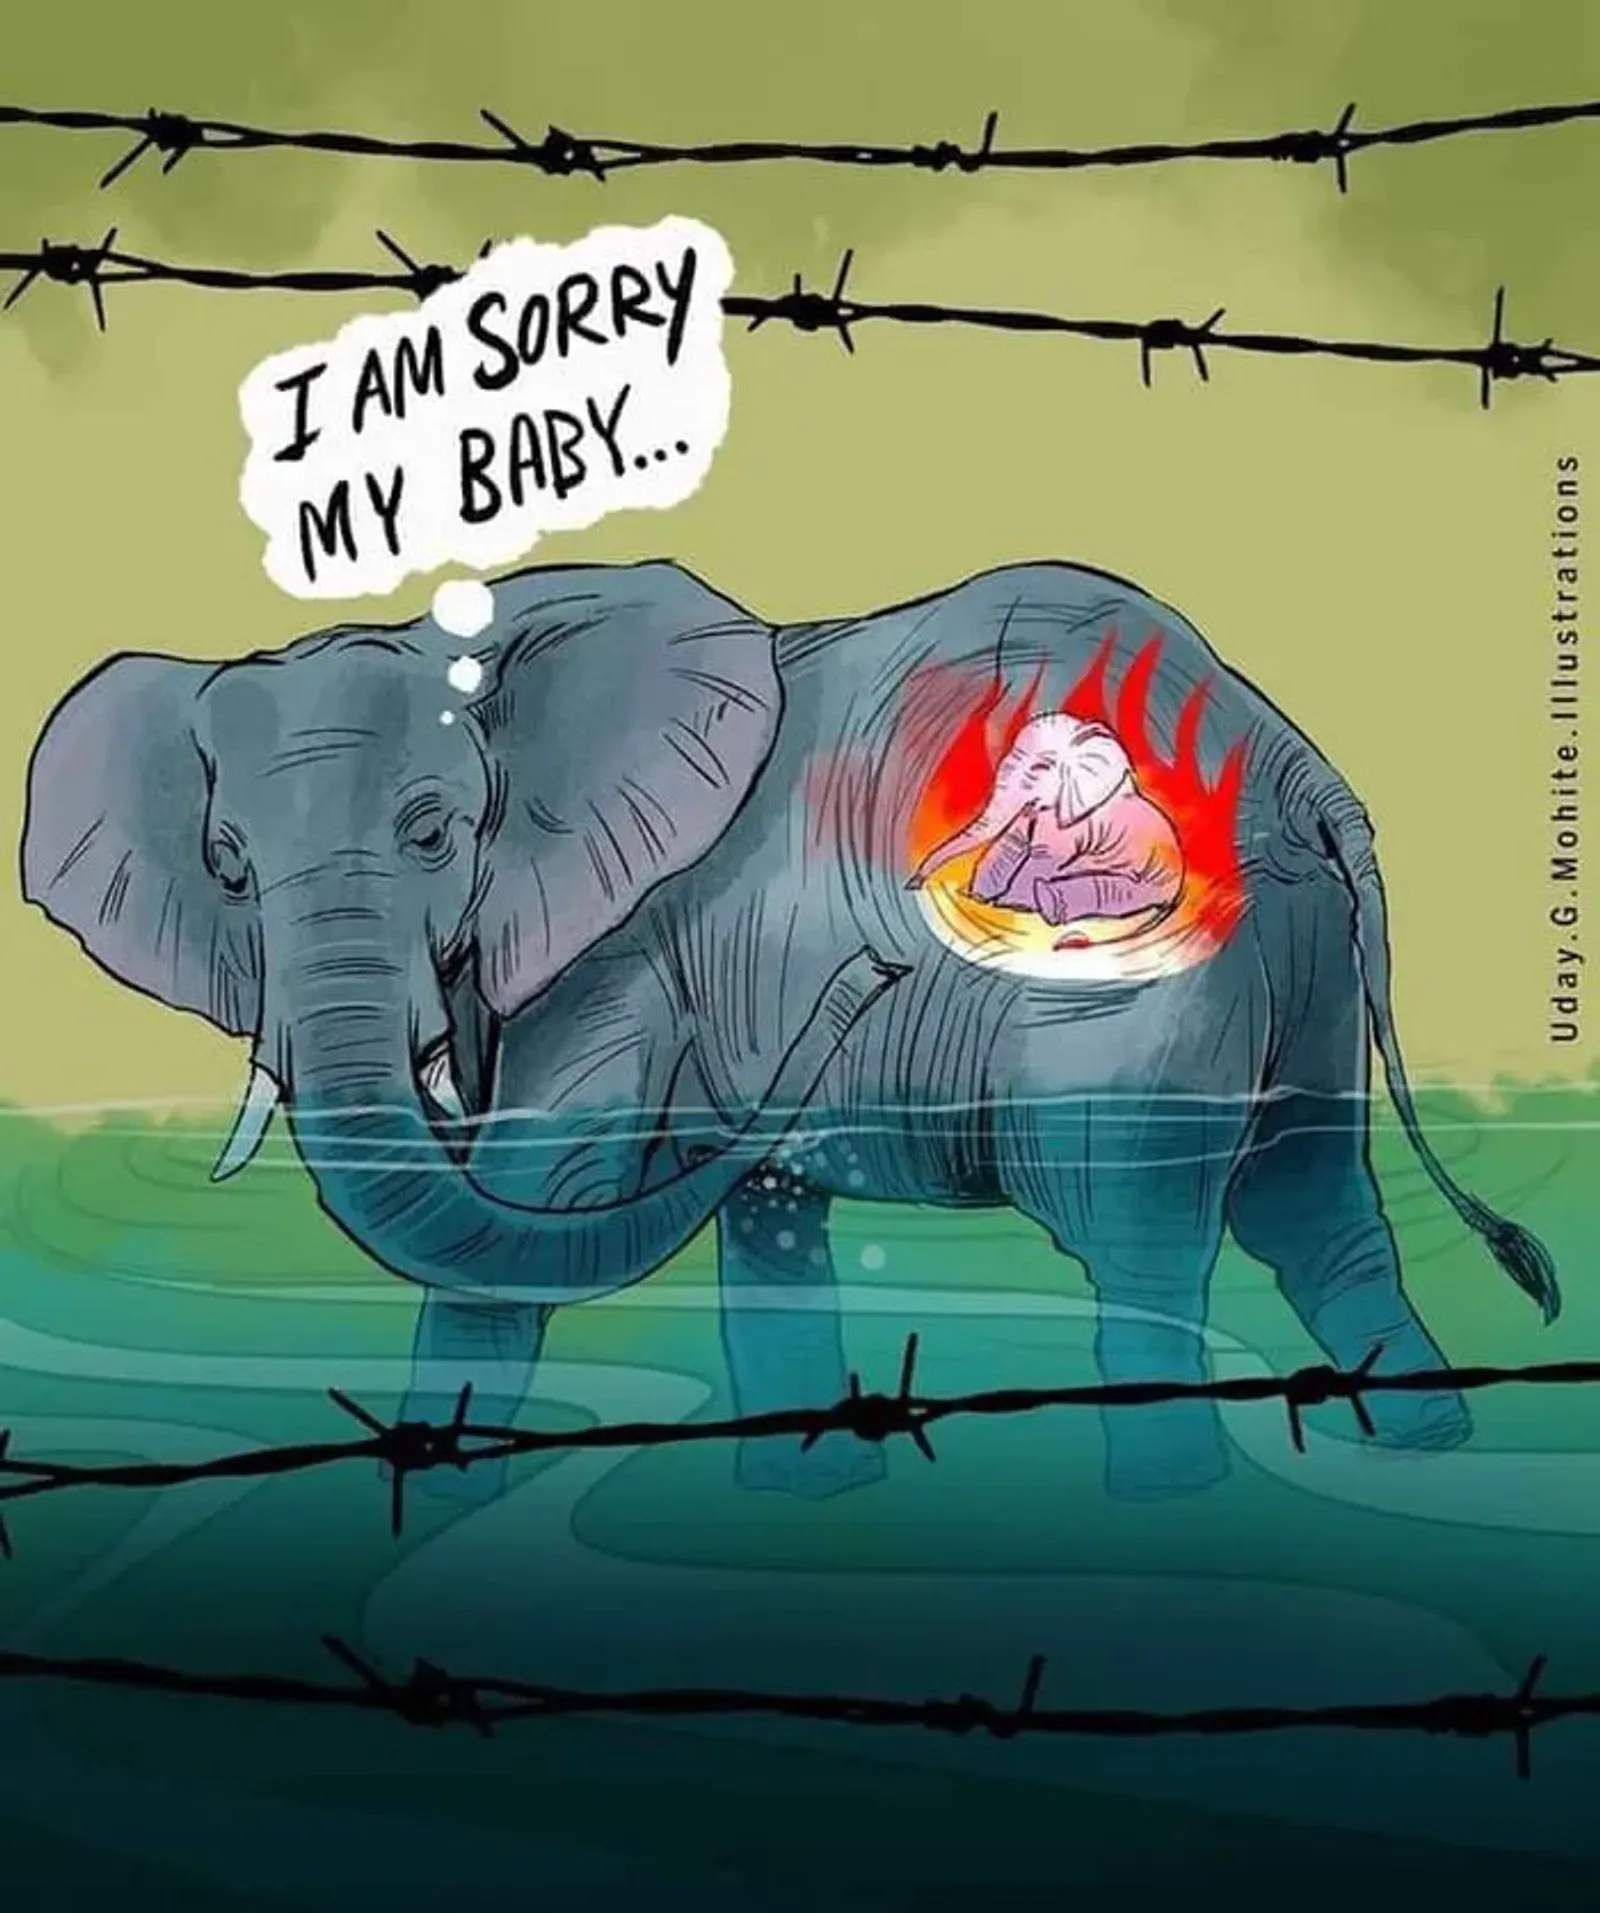 7 Ilustrasi Menyentuh Para Seniman untuk Kematian Gajah di Kerala